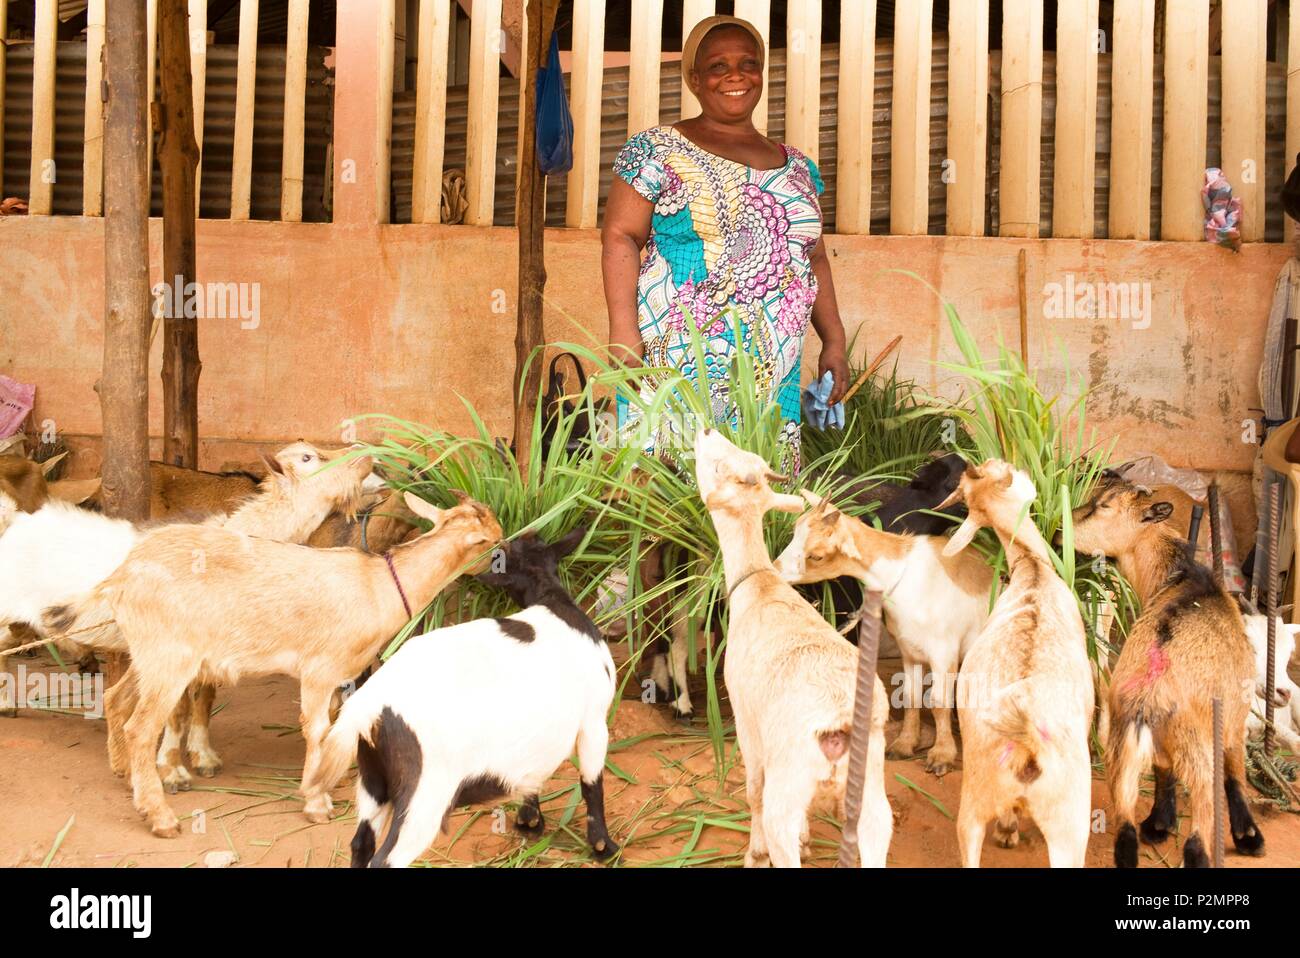 Il Togo, Lomé, ONG Assilassime supportato da imprenditori du Monde, donna che ha beneficiato di unsecured micro-credito per allevare gli animali in vendita Foto Stock